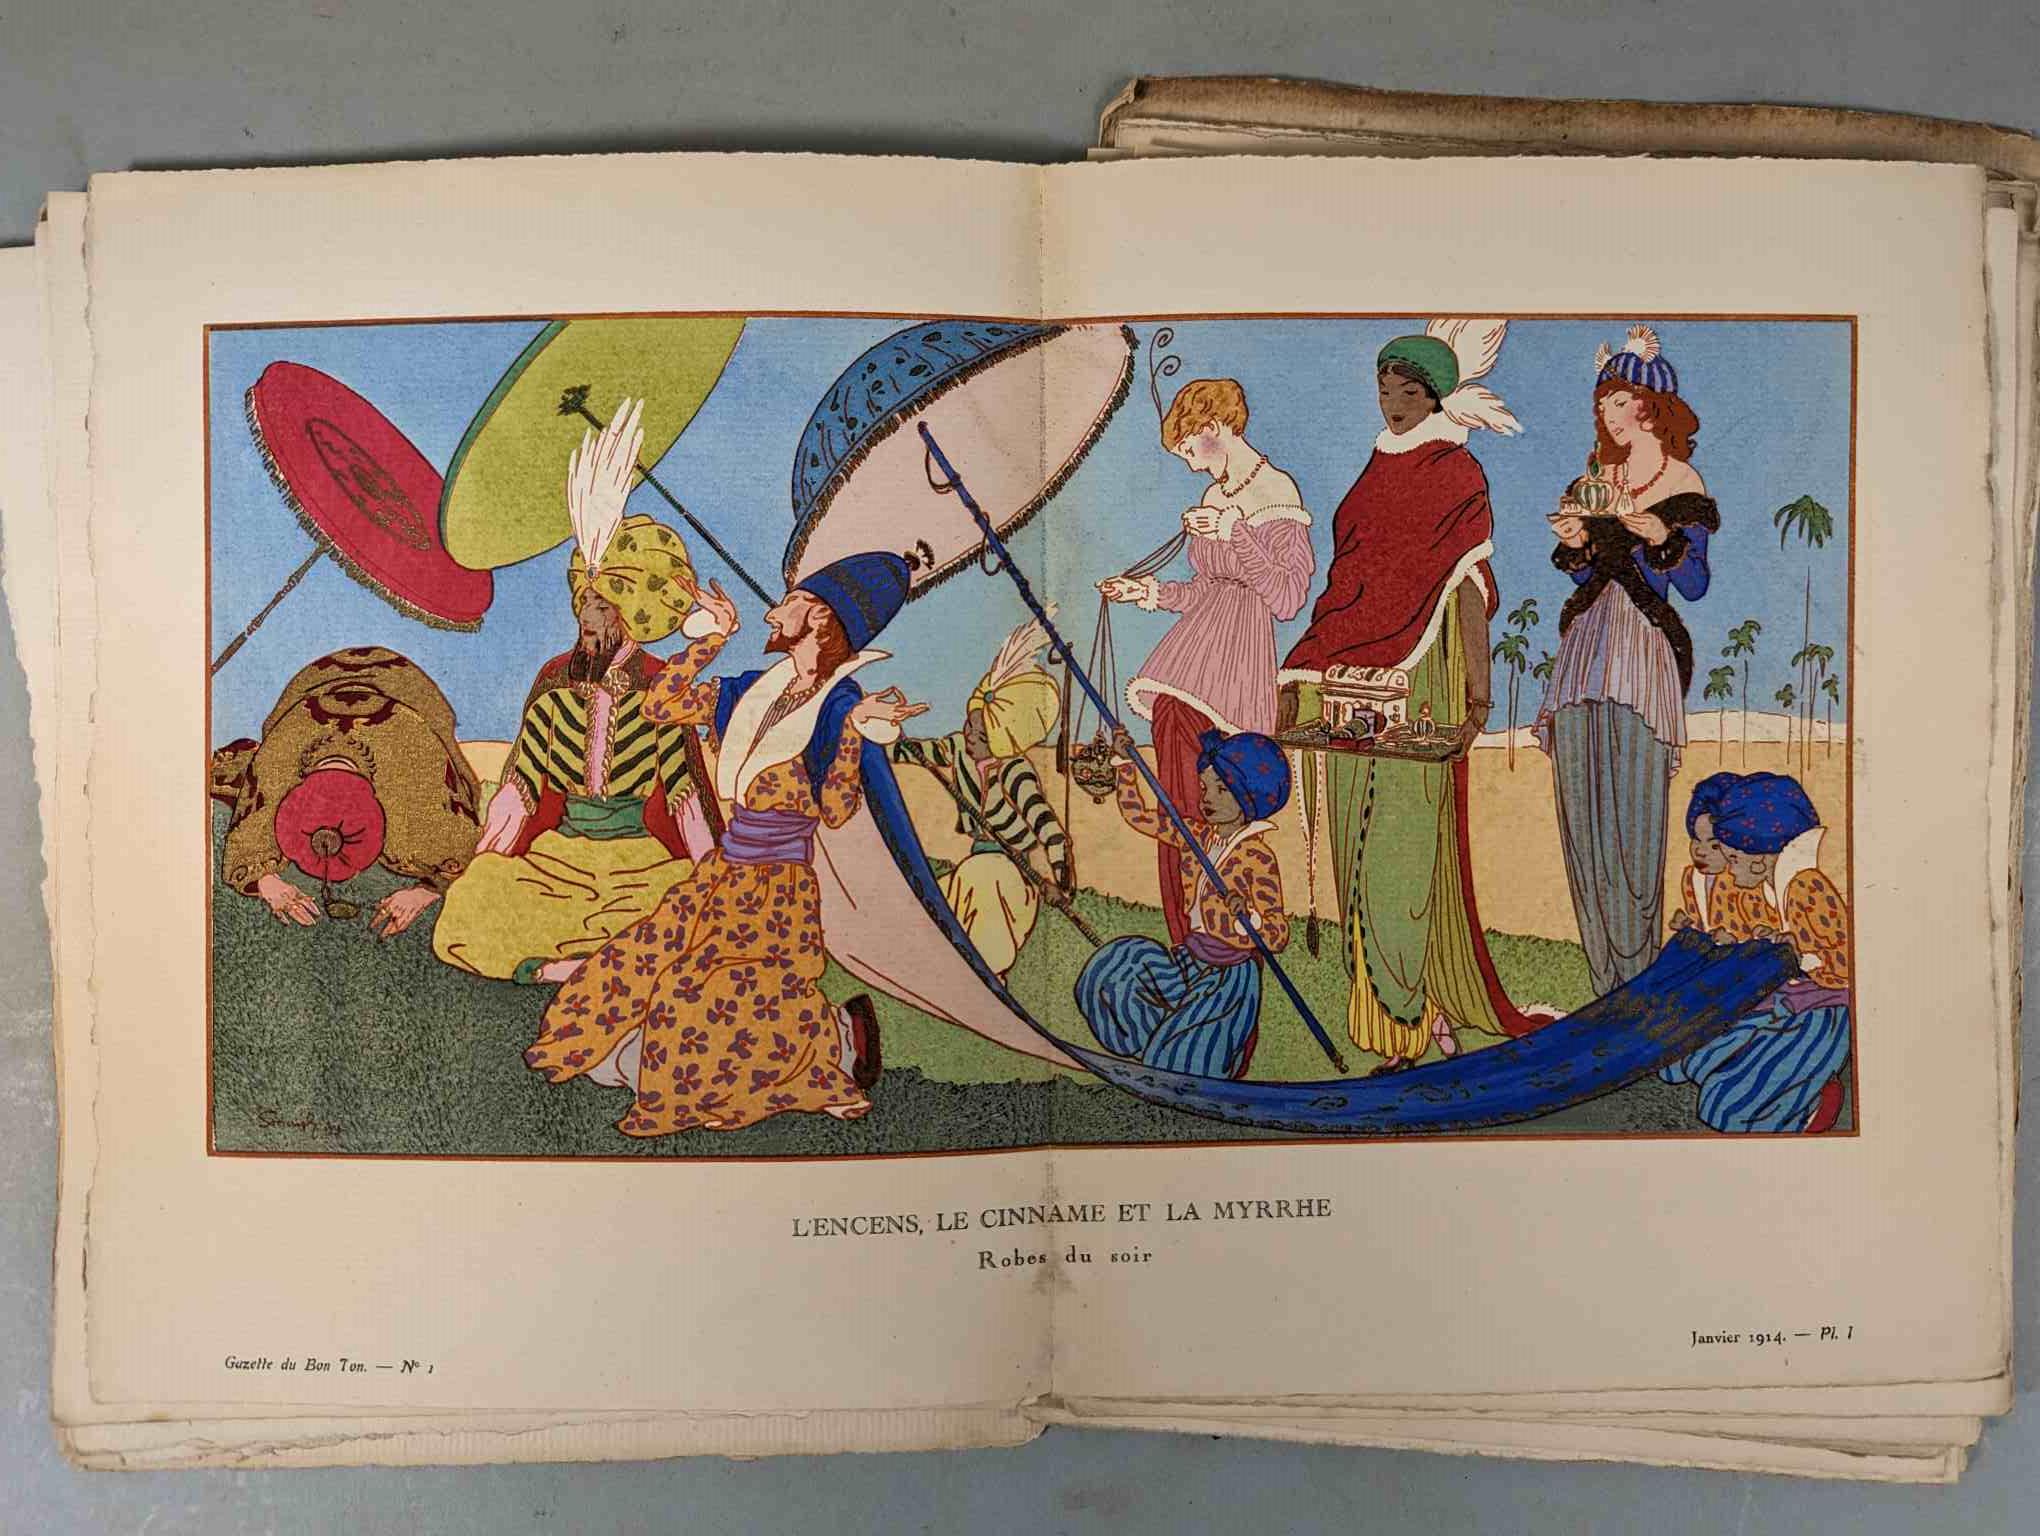 FASHION. VOGEL, Lucien. GAZETTE DU BON TON: Art-Modes & Frivolités, Paris 1913-14, 4 vol. - Image 11 of 54